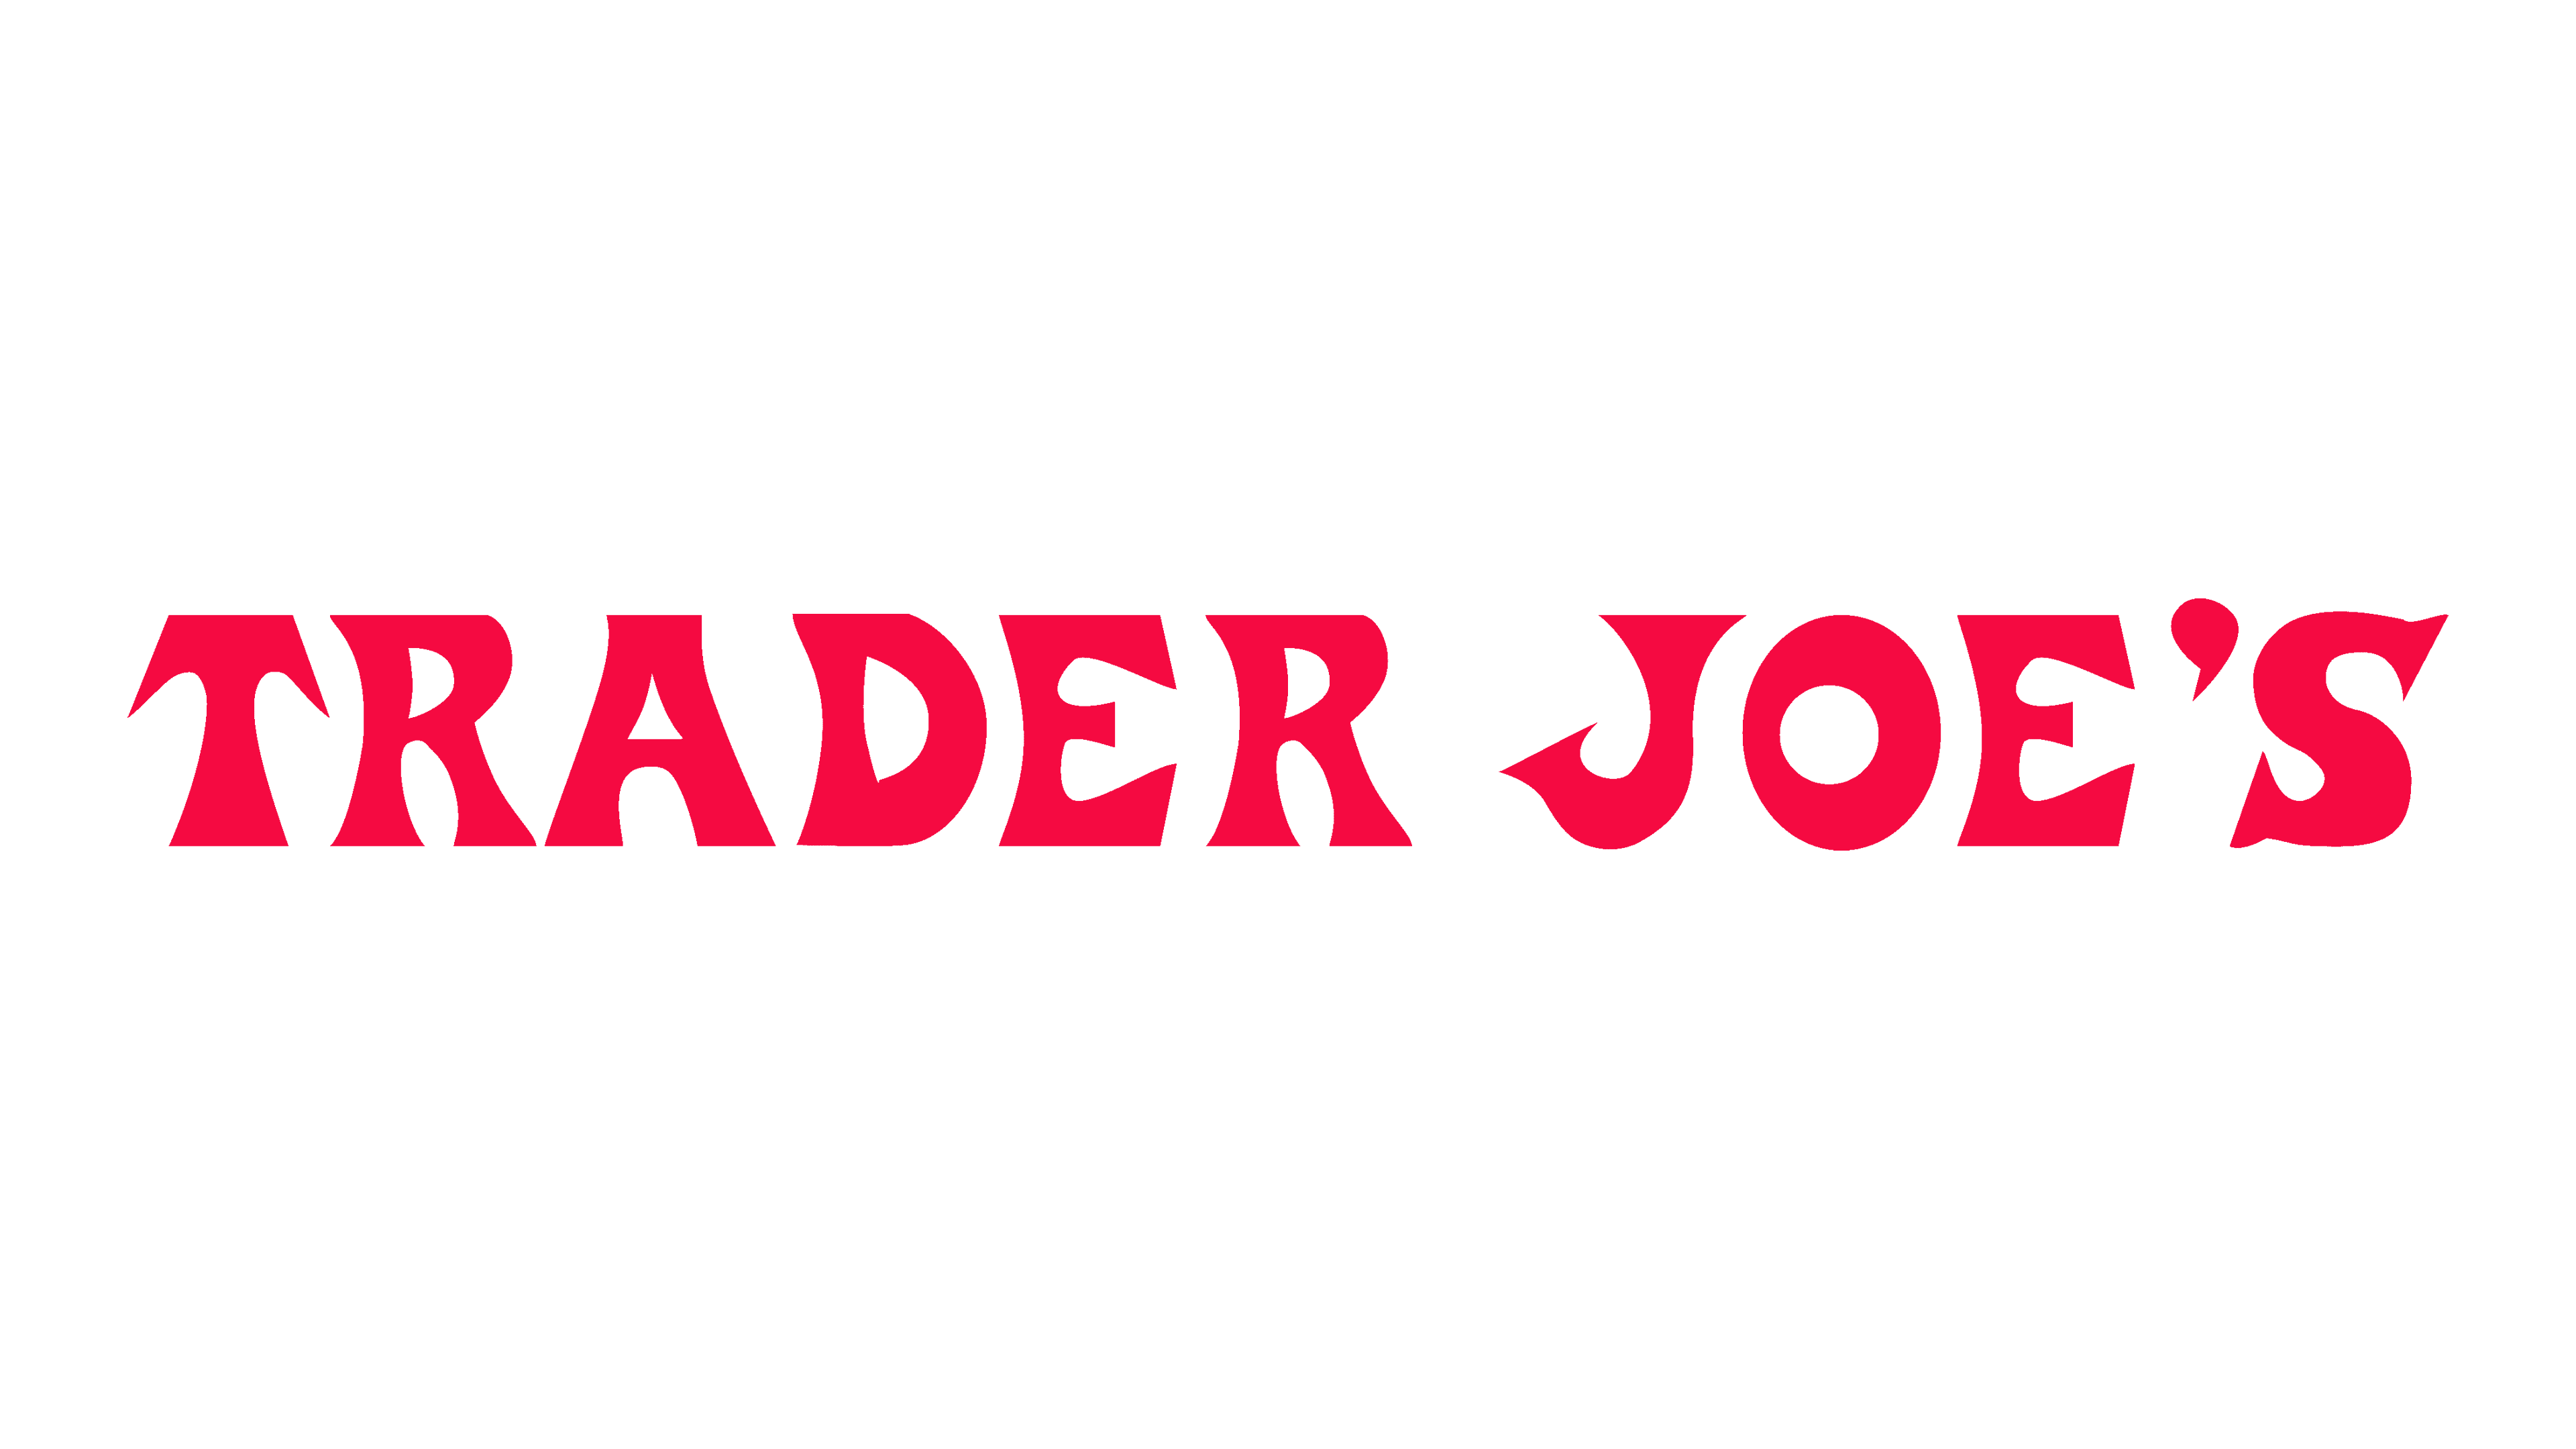 Company logo: Trader Joe's.